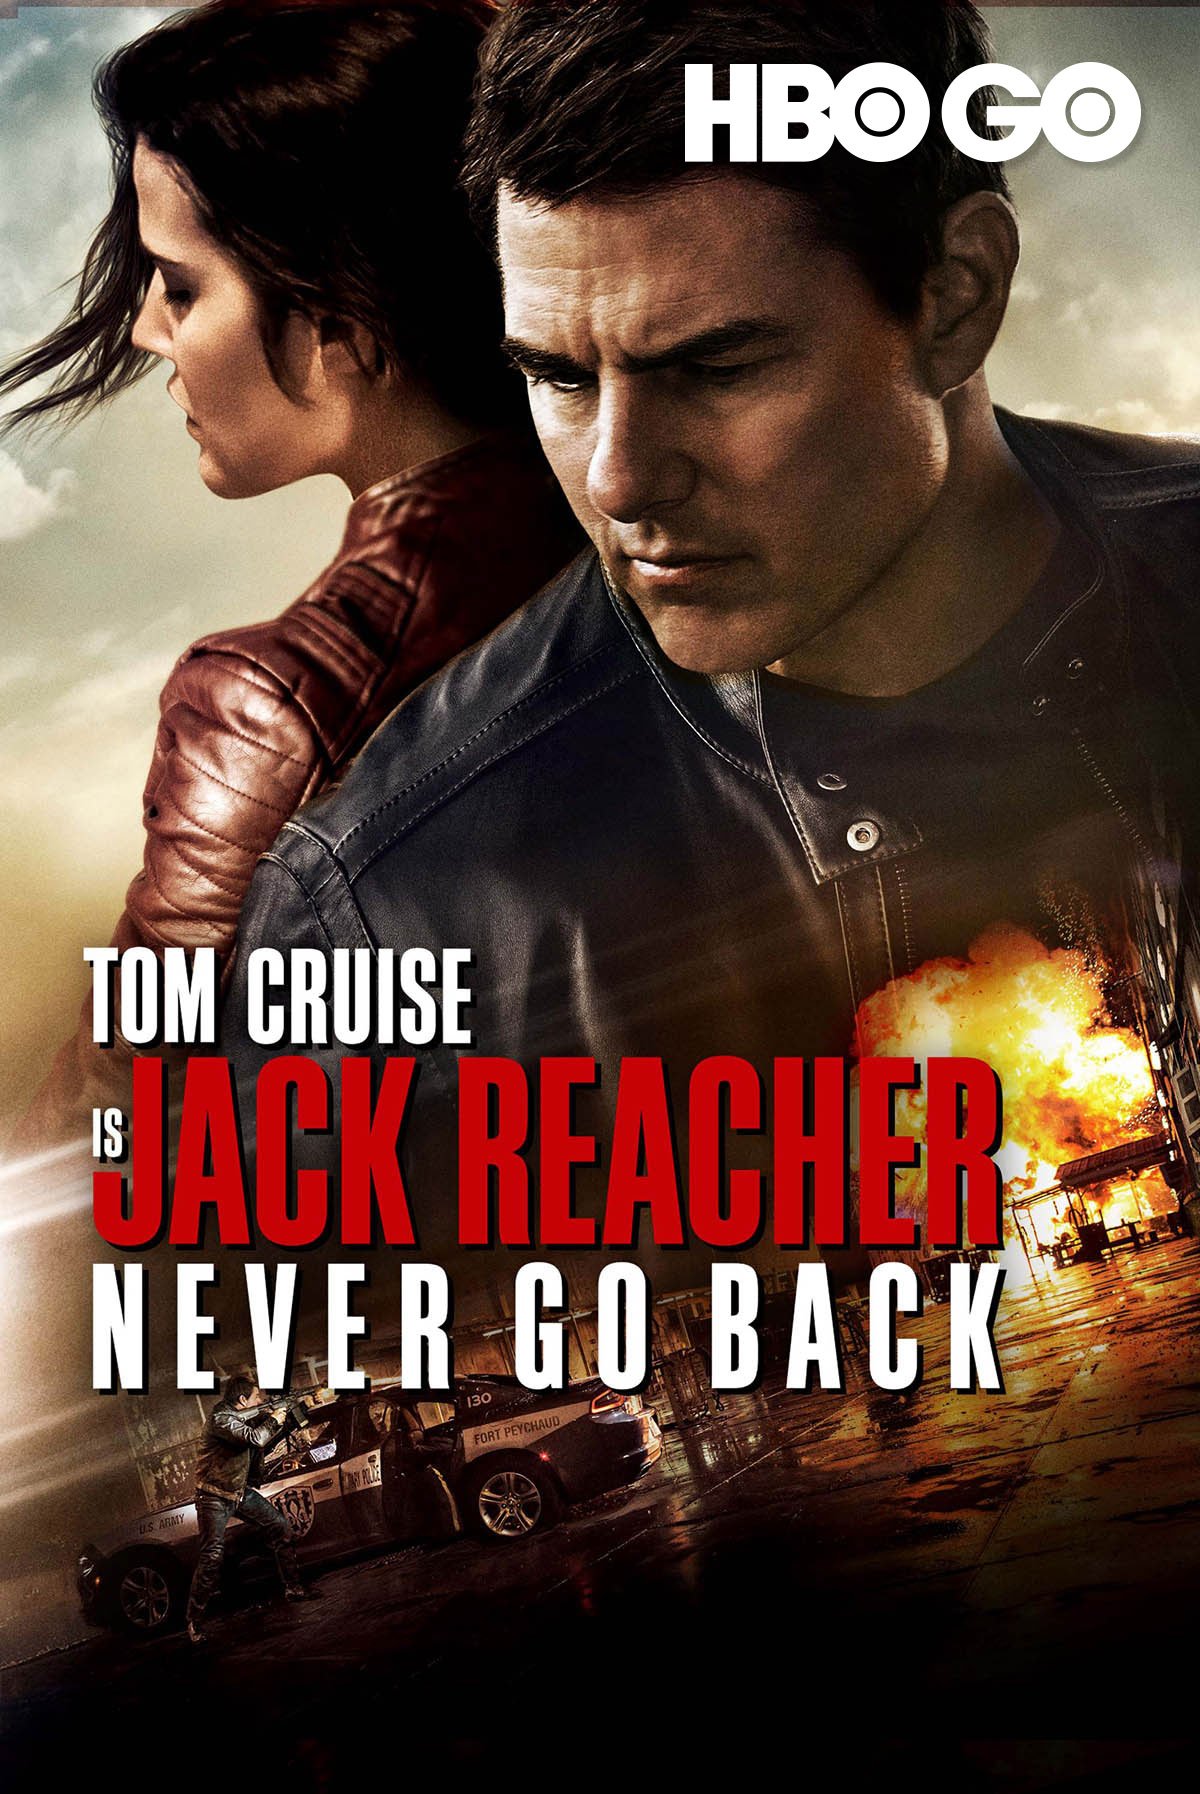 Jack reacher never go back